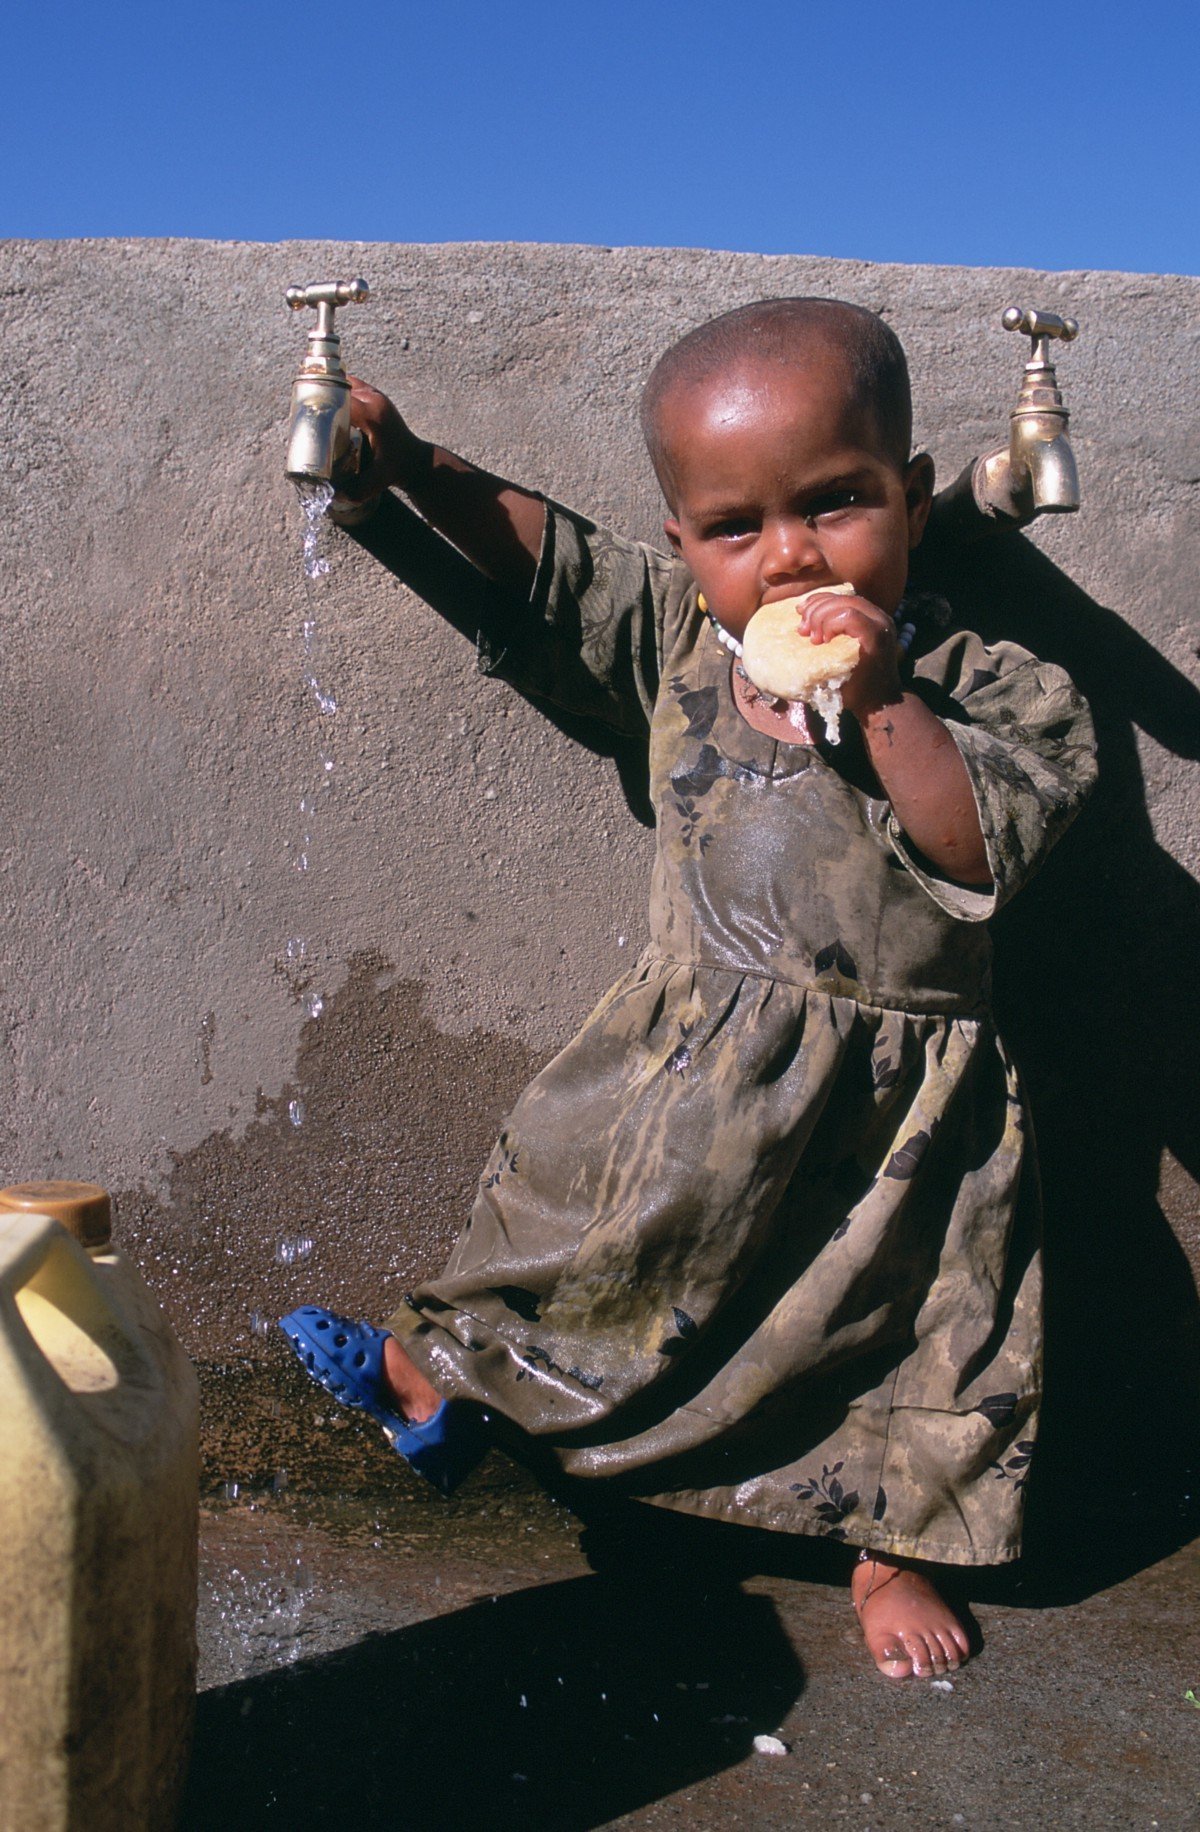 Spot la diferencia: las fotos del pasado Capture Cambio en Etiopía remota